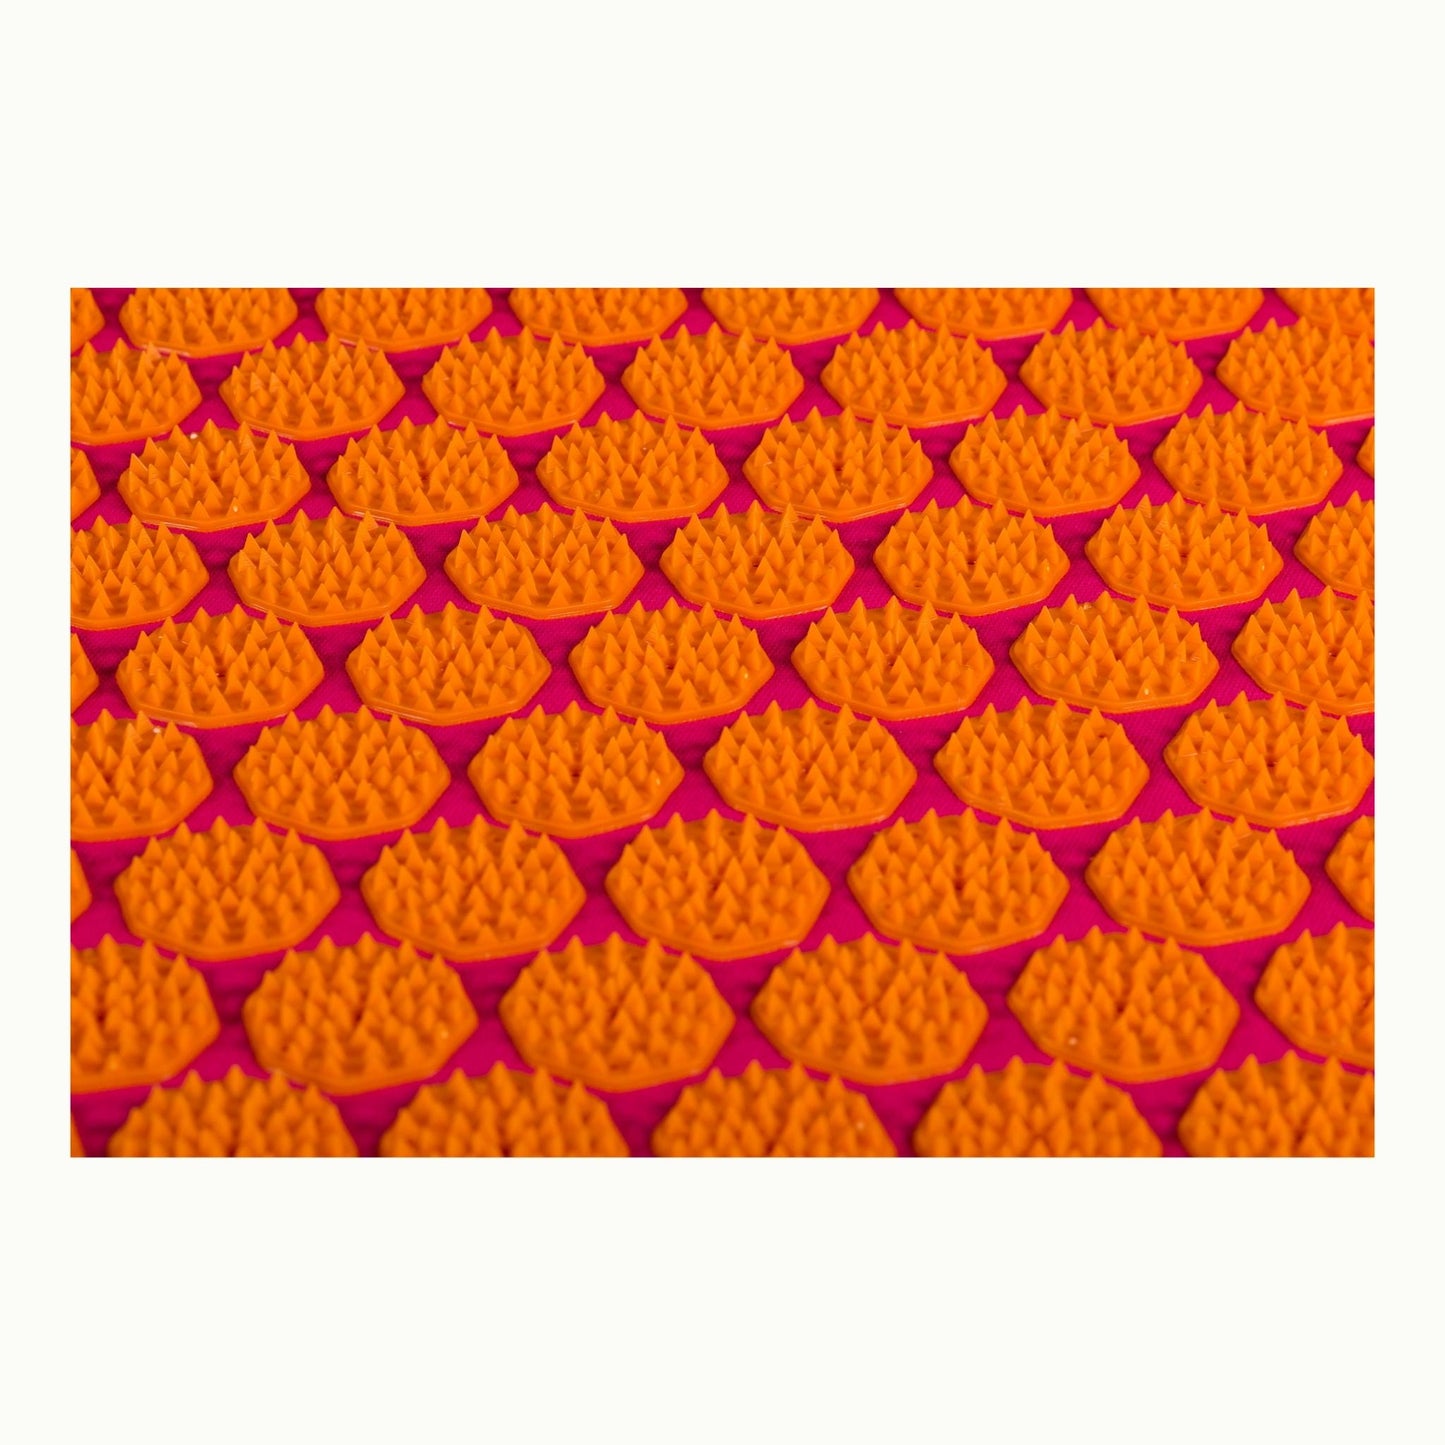 Flowee Spijkermat of acupressuurmat fuchsia oranje spikes van dichtbij